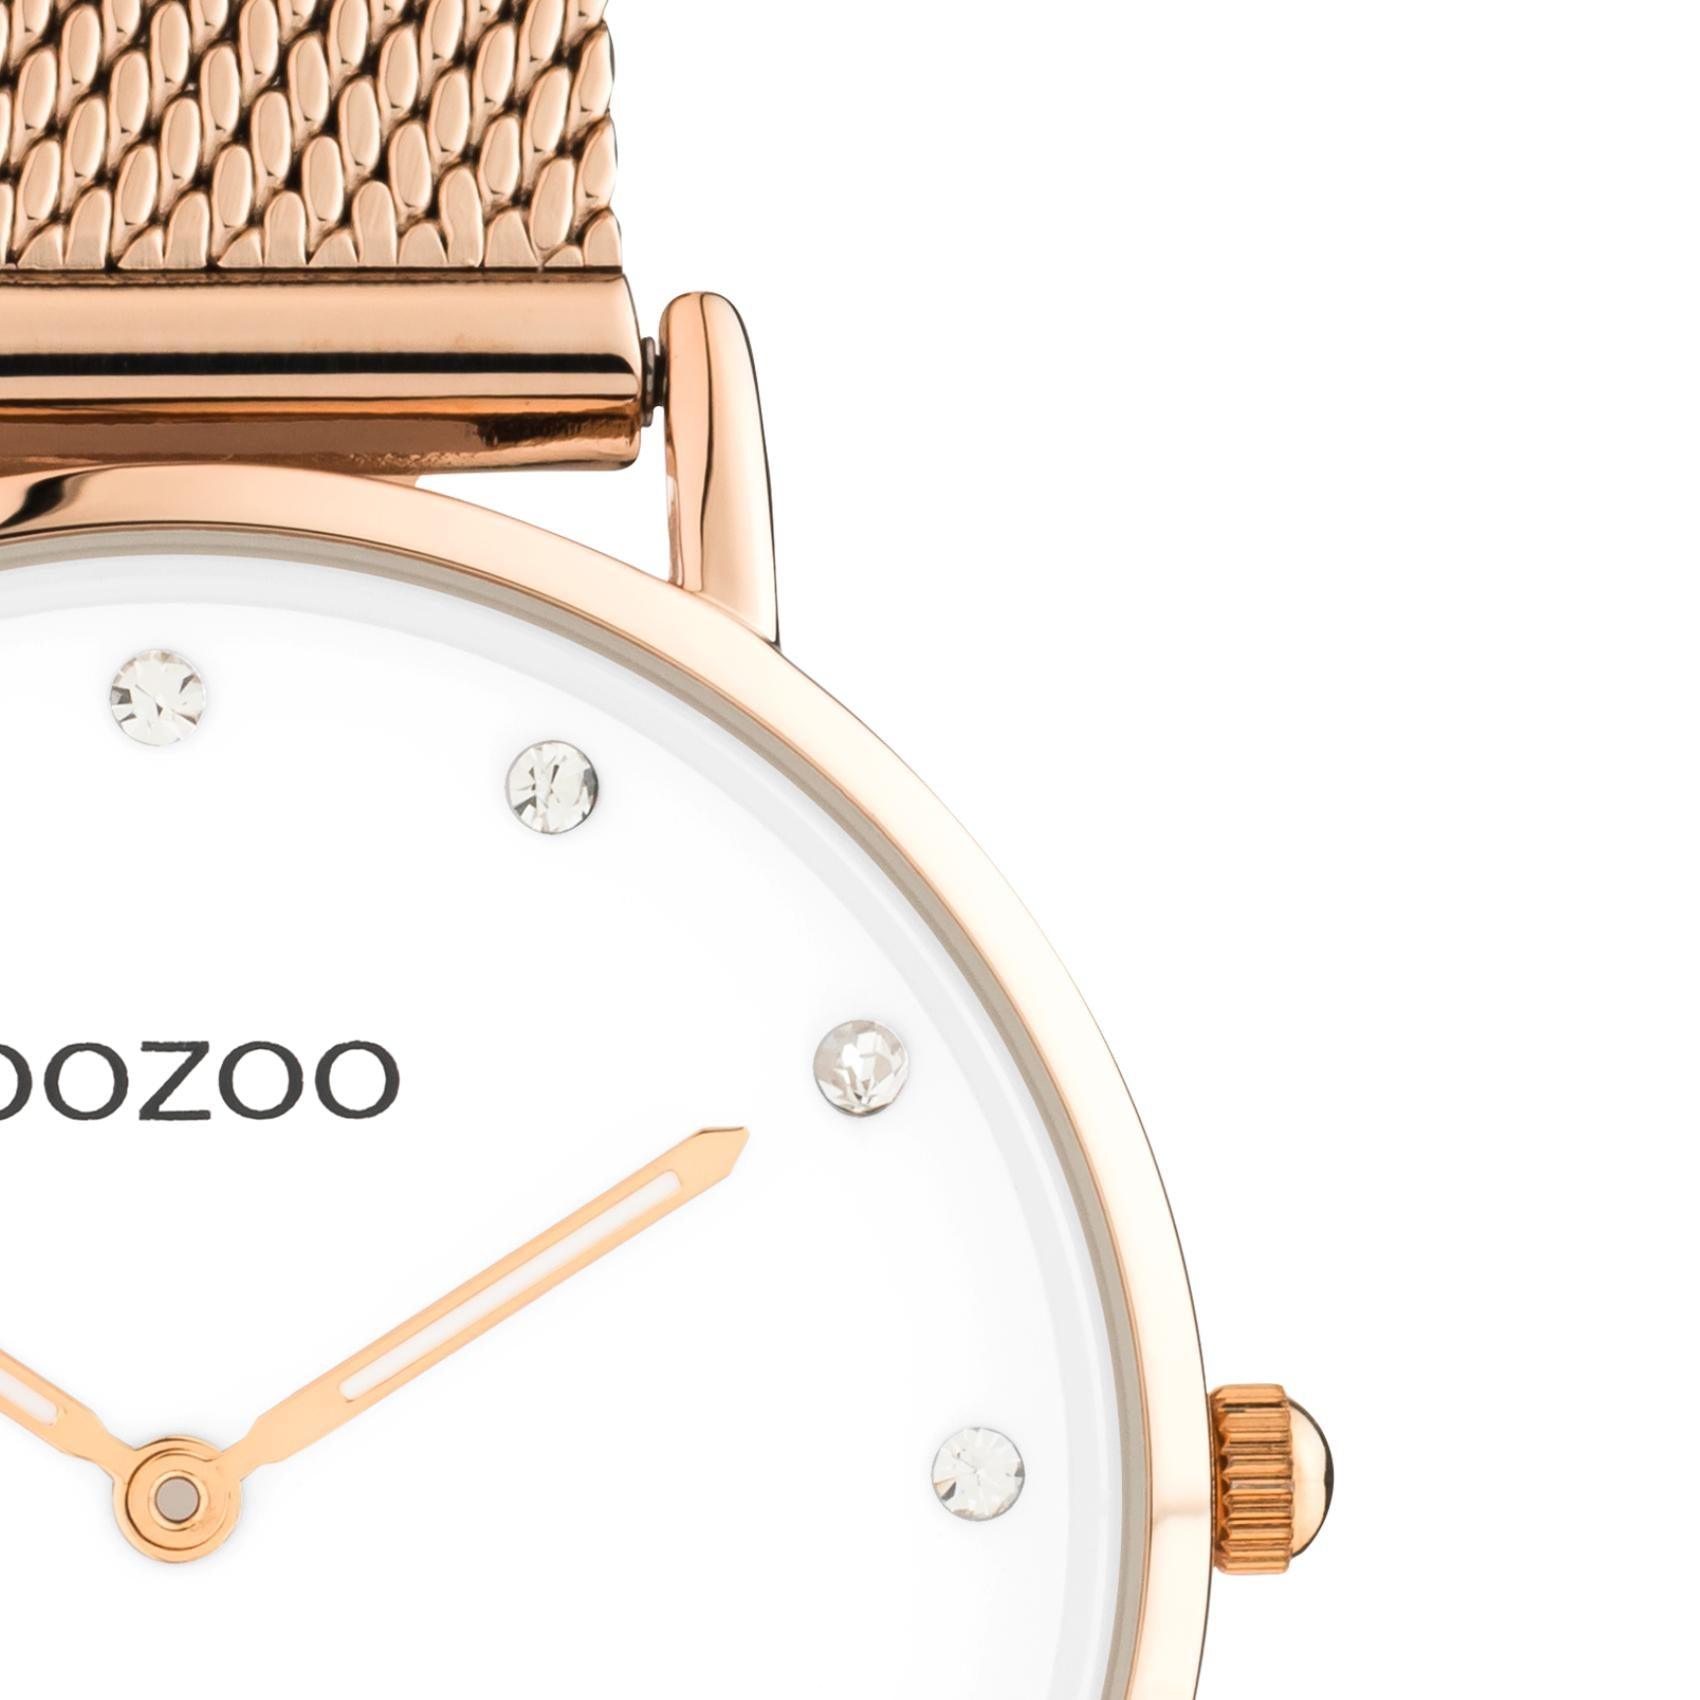 Στρογγυλό ρολόι Oozoo Vintage C20243 με ροζ χρυσό ατσάλινο μπρασελέ,άσπρο καντράν με ζιργκόν διαμέτρου 32mm και μηχανισμό μπαταρίας quartz.